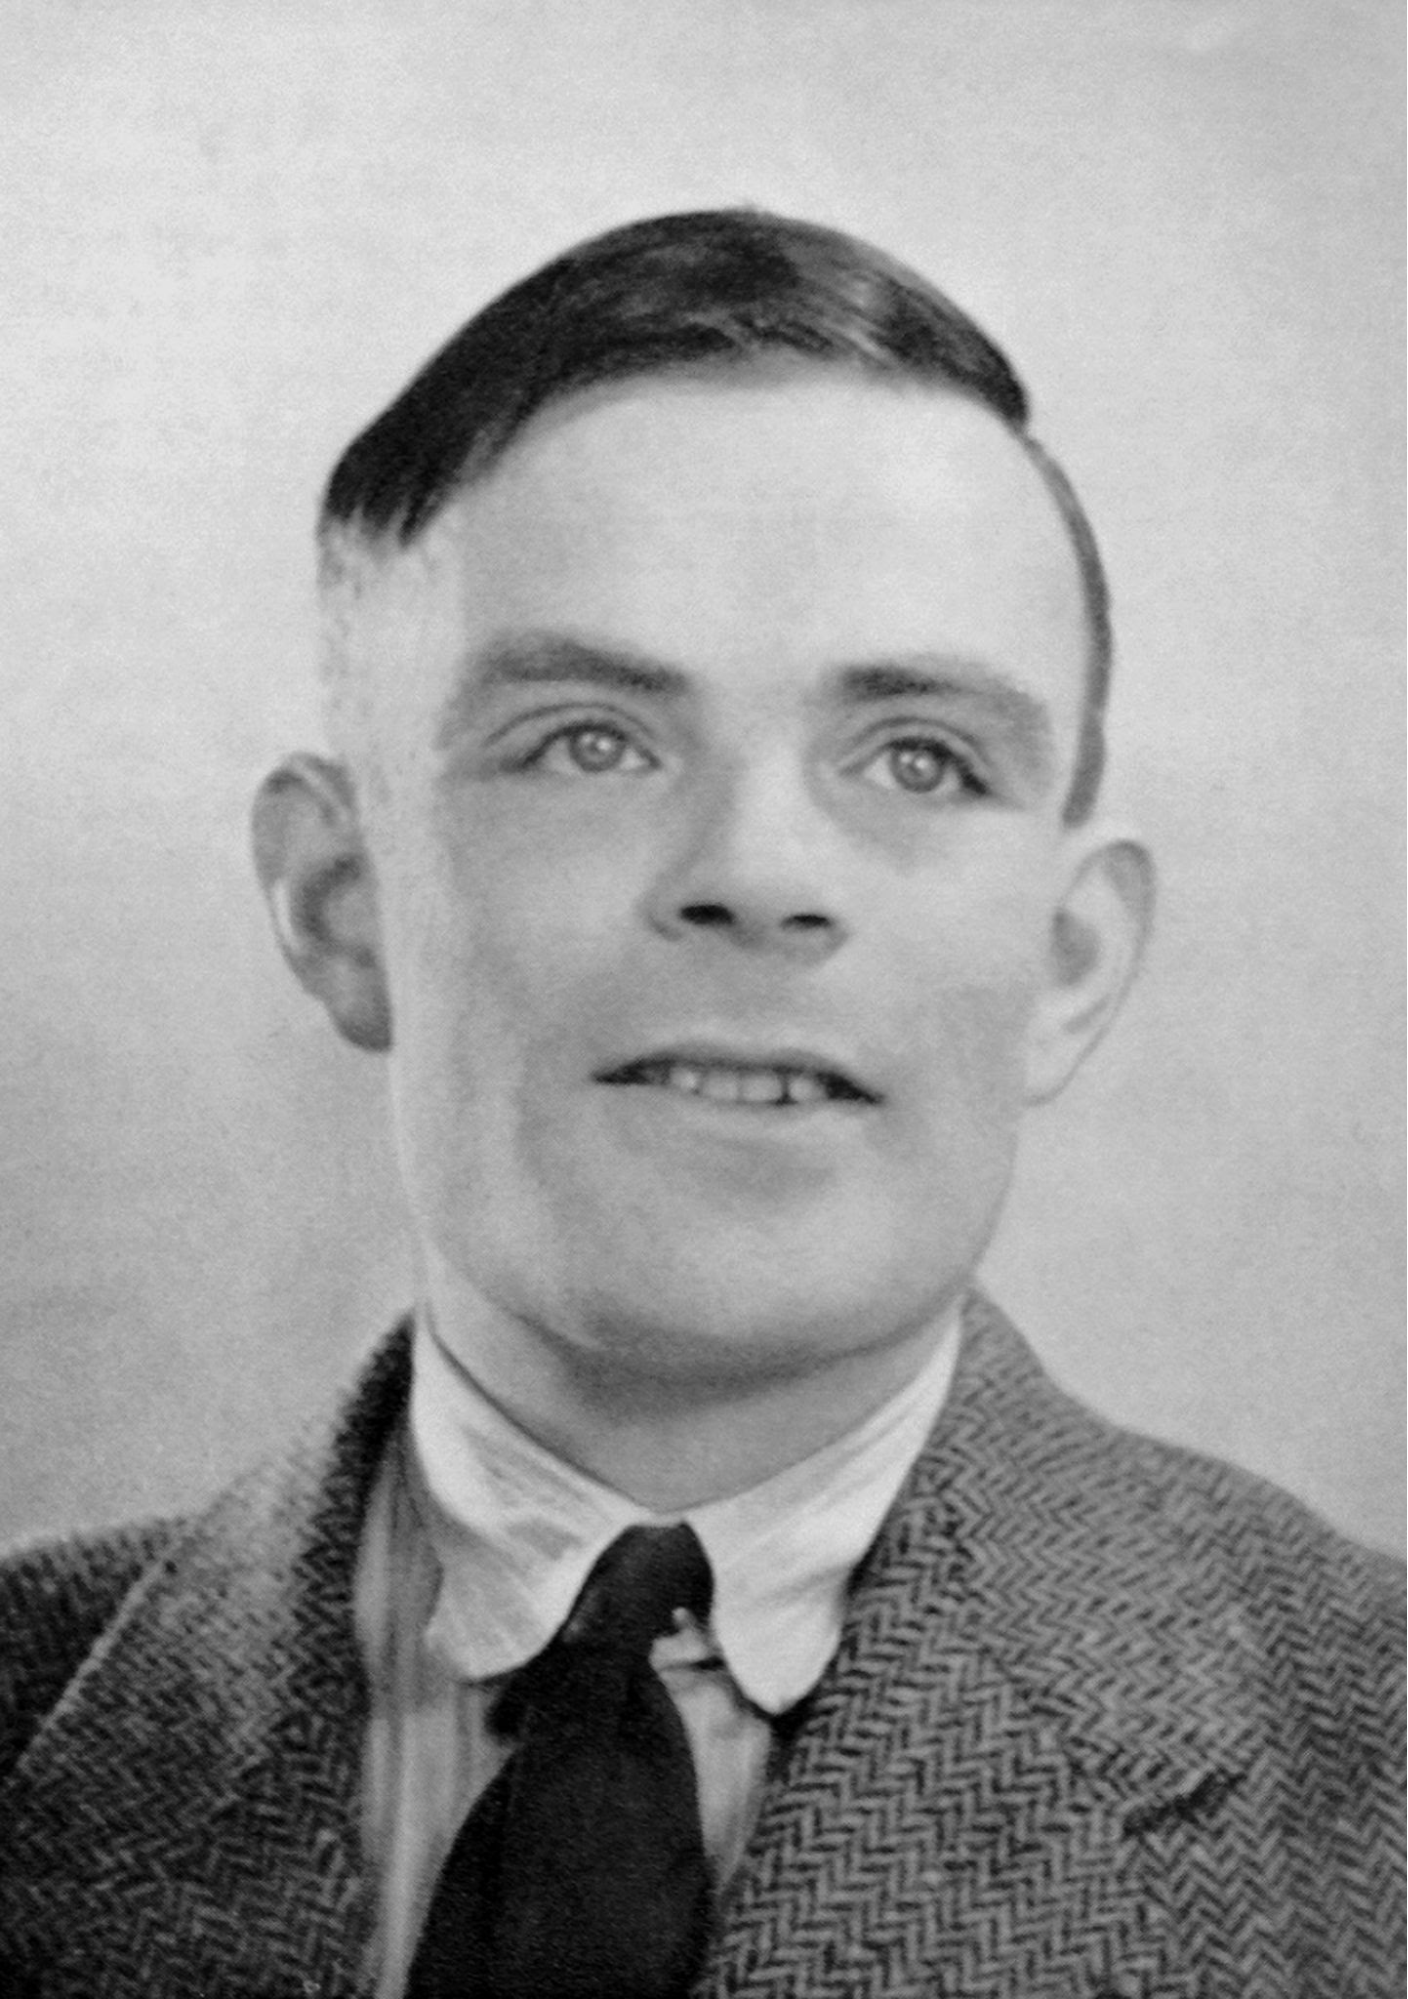 Imagem de Alan Turing, um homem caucasiano e de cabelos escuros curto.